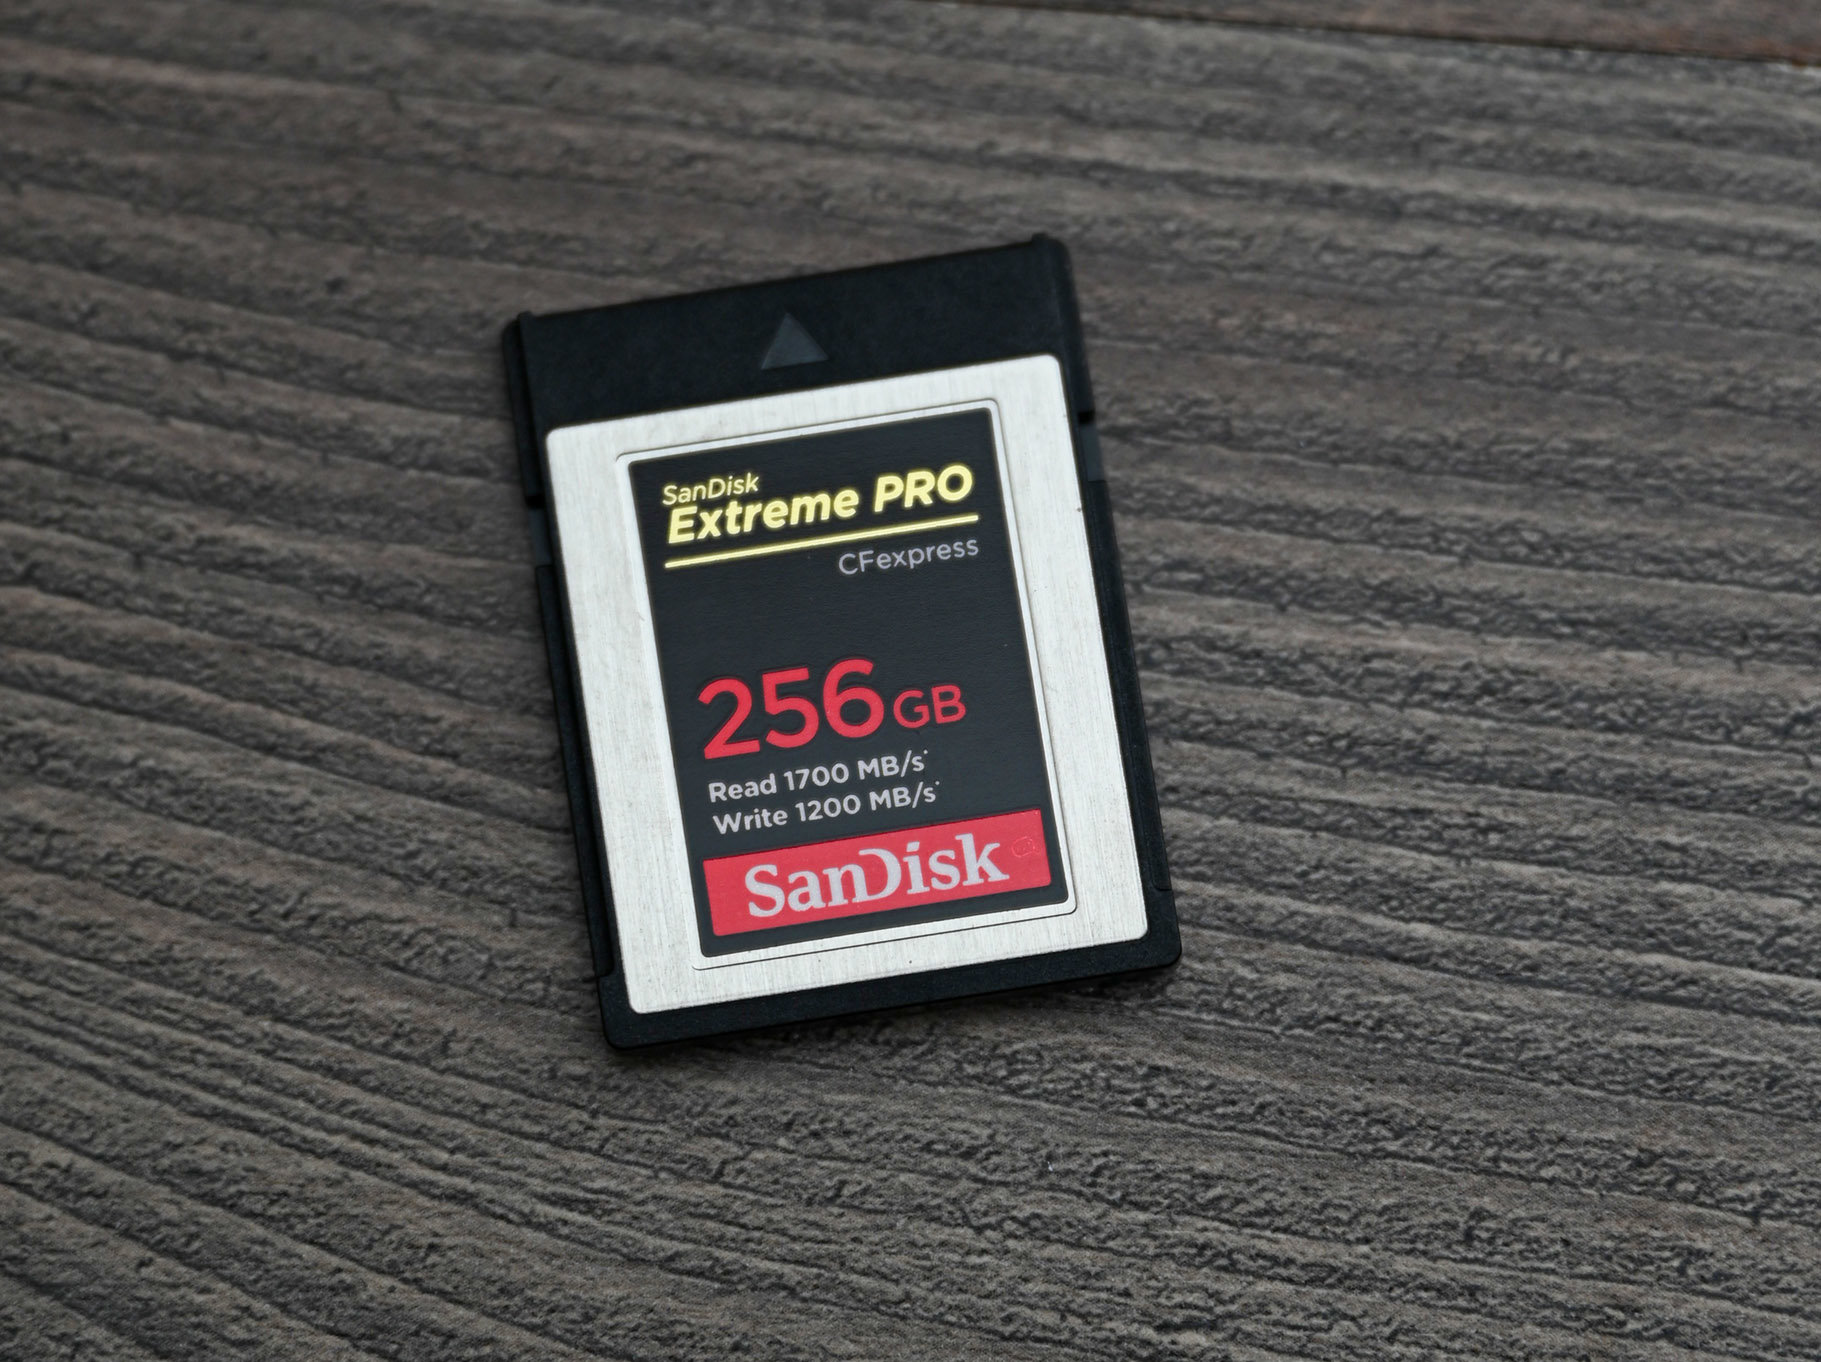 Maggiori informazioni su "Sandisk CFexpress Extreme PRO da 256 gb e Nikon Z"